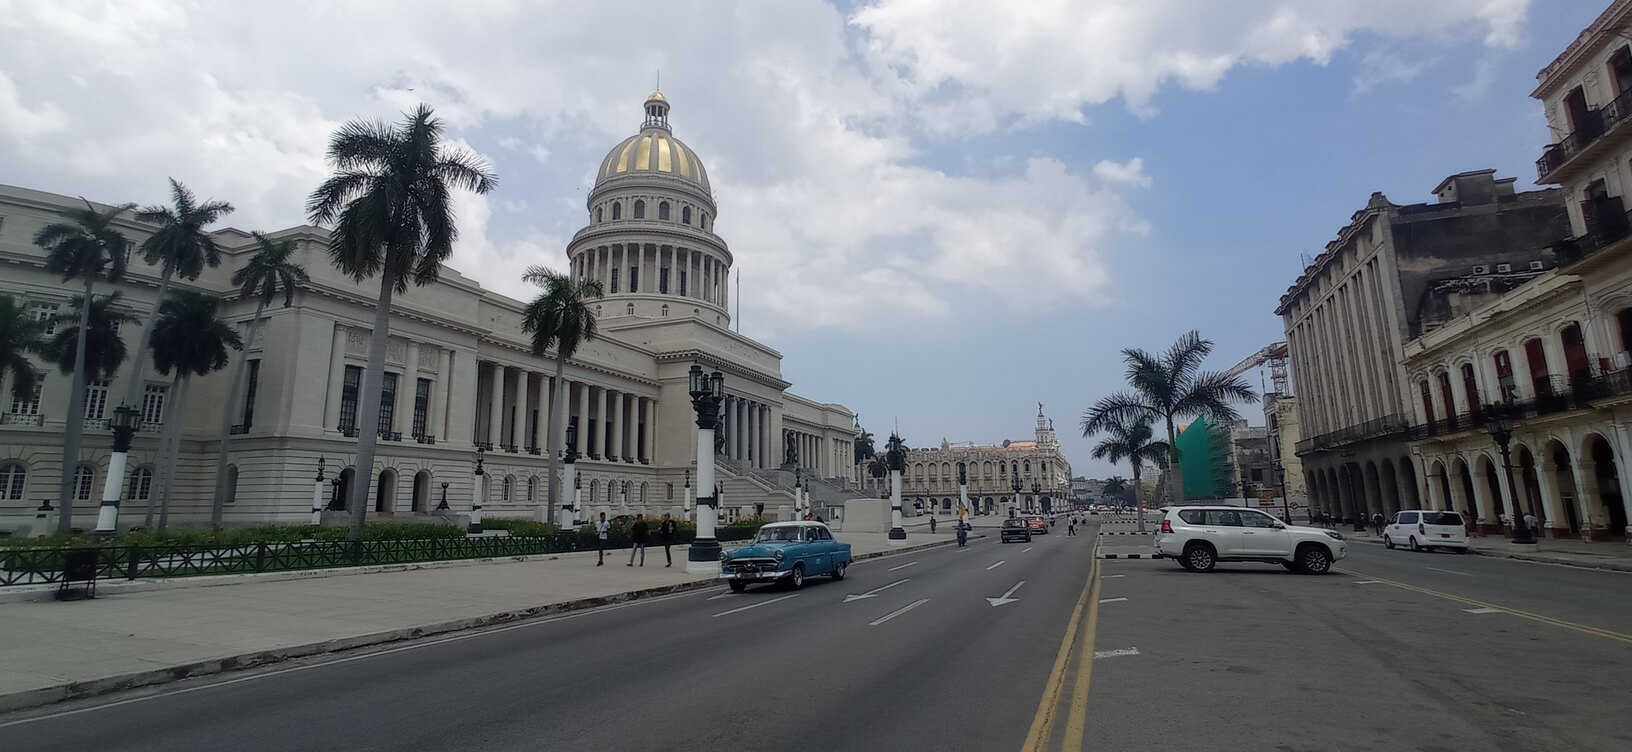 Capitolio Cuba andando